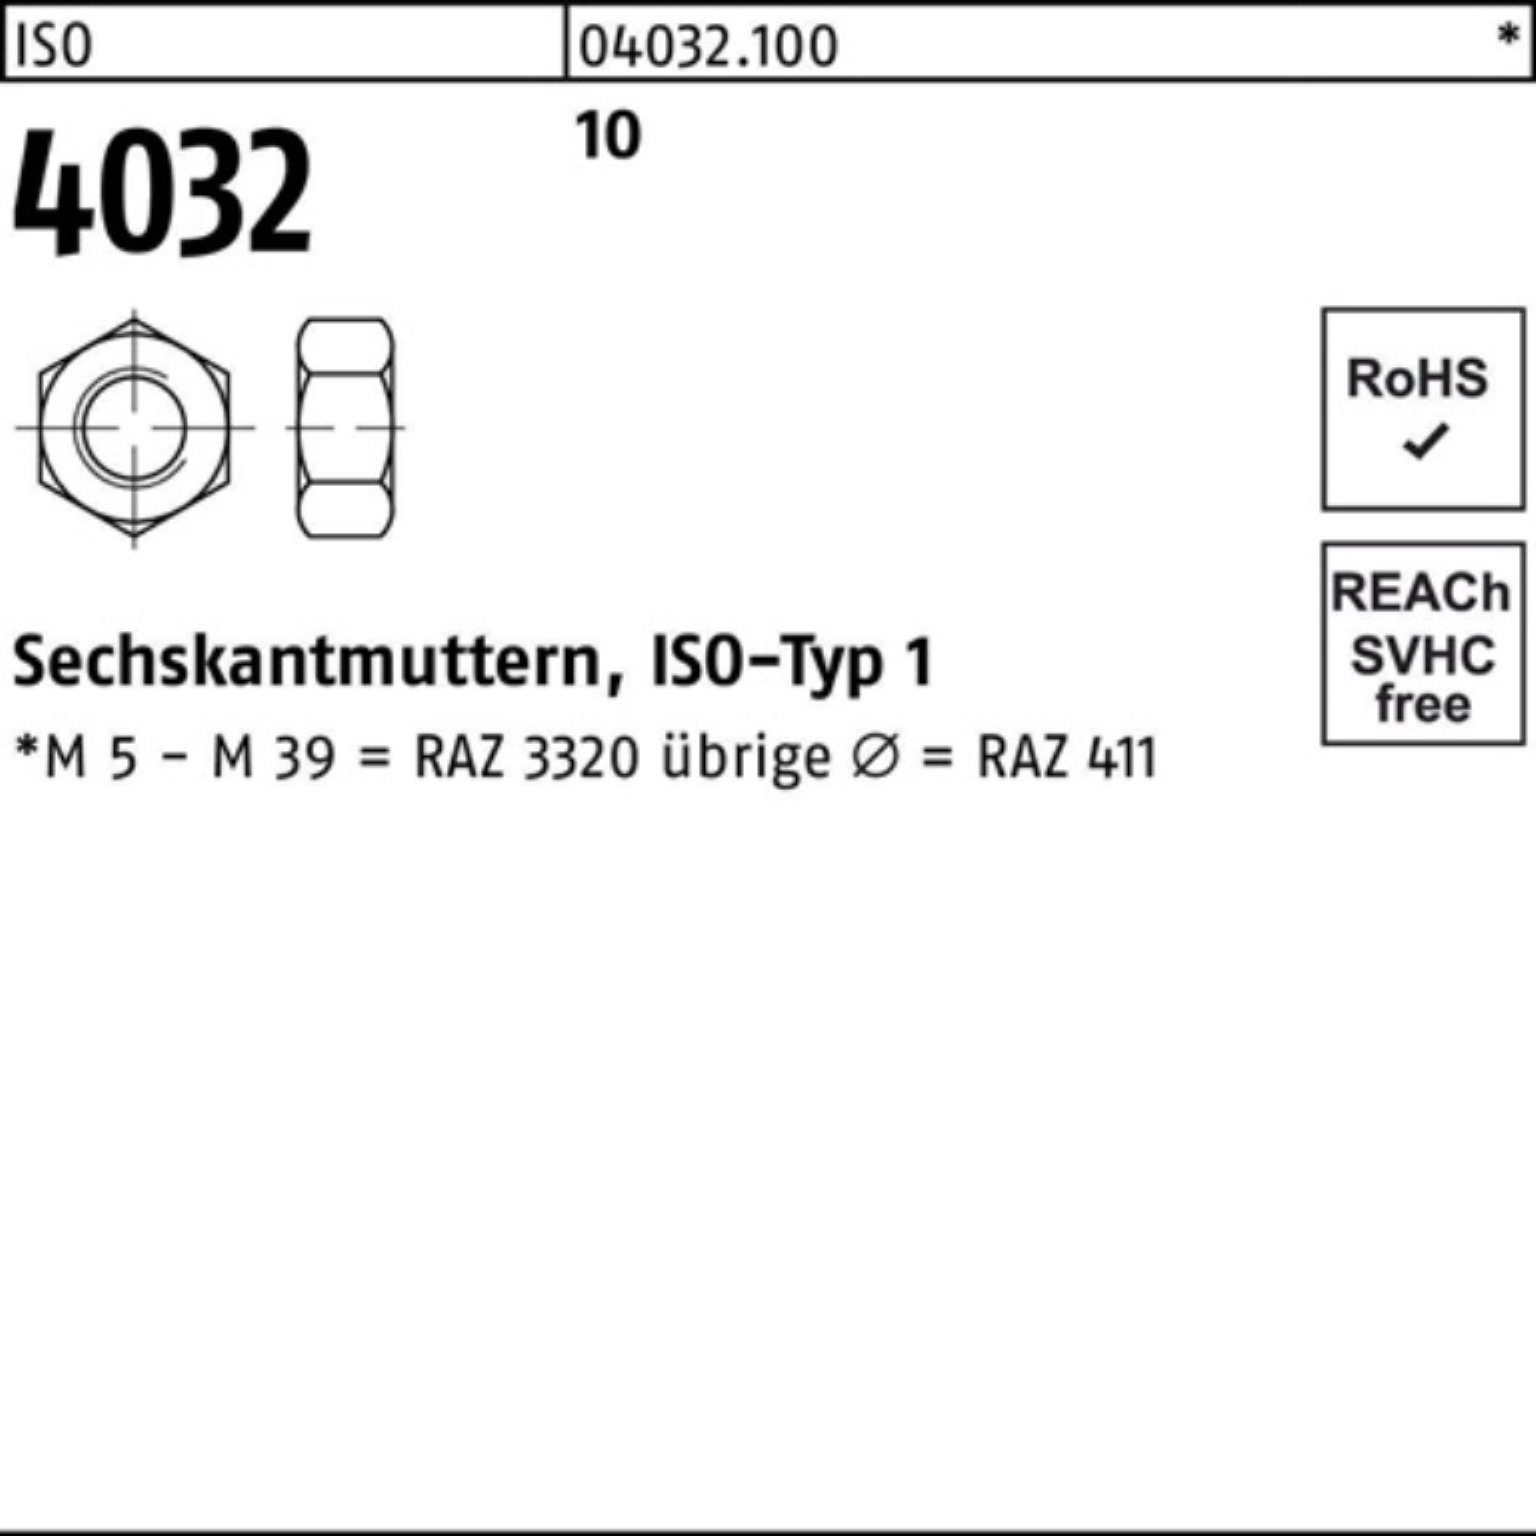 1000 4032 M8 Muttern Sechskantmutter Sec 10 10 Stück ISO 1000er ISO Pack Bufab 4032